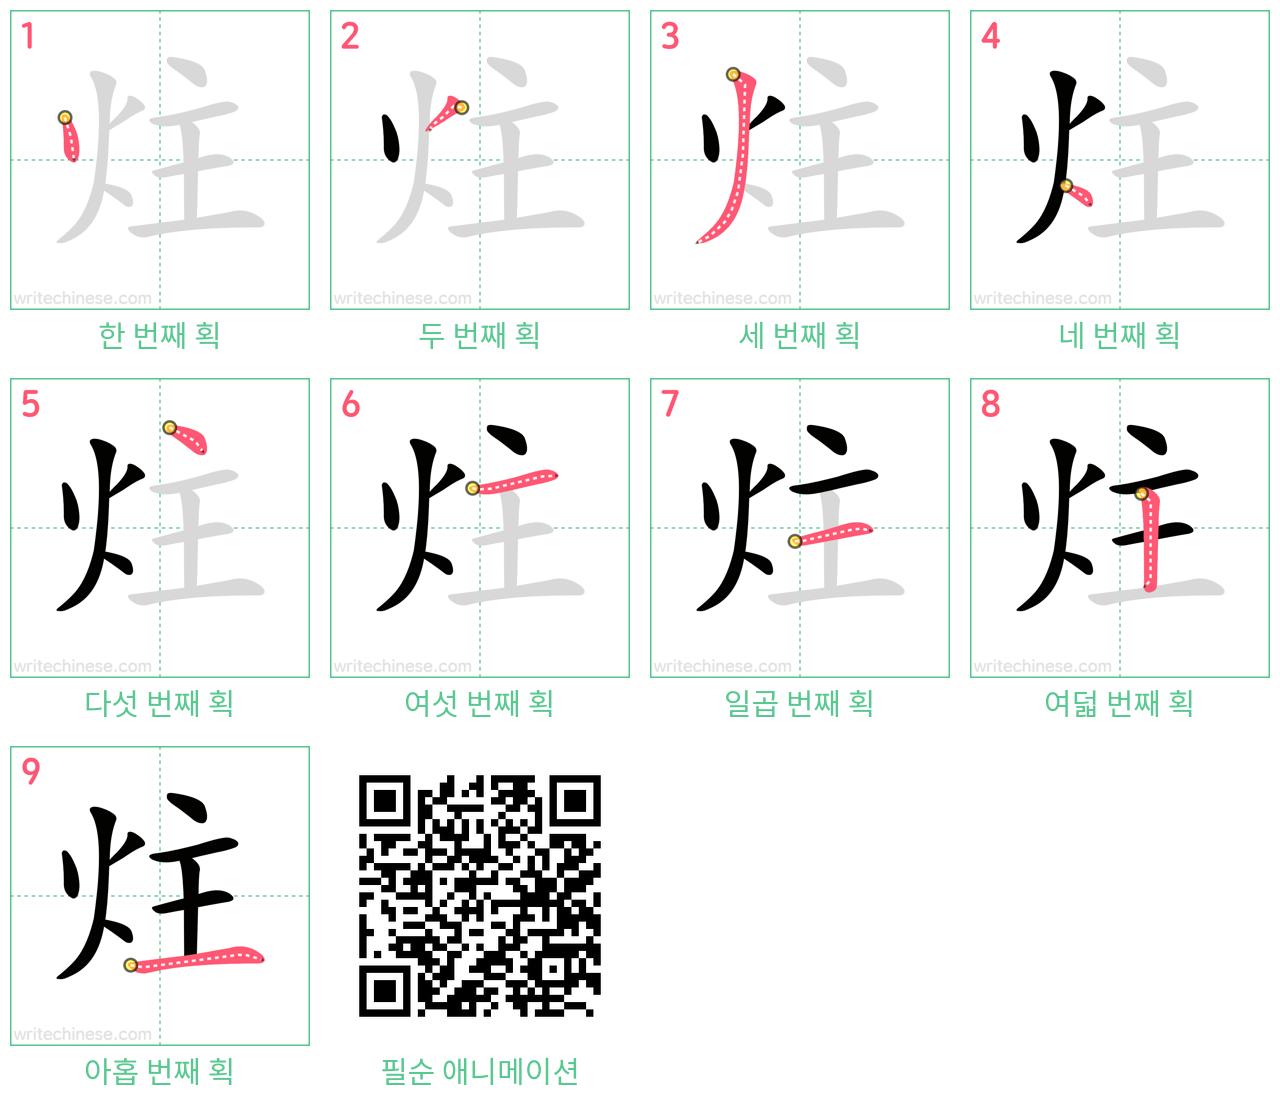 炷 step-by-step stroke order diagrams